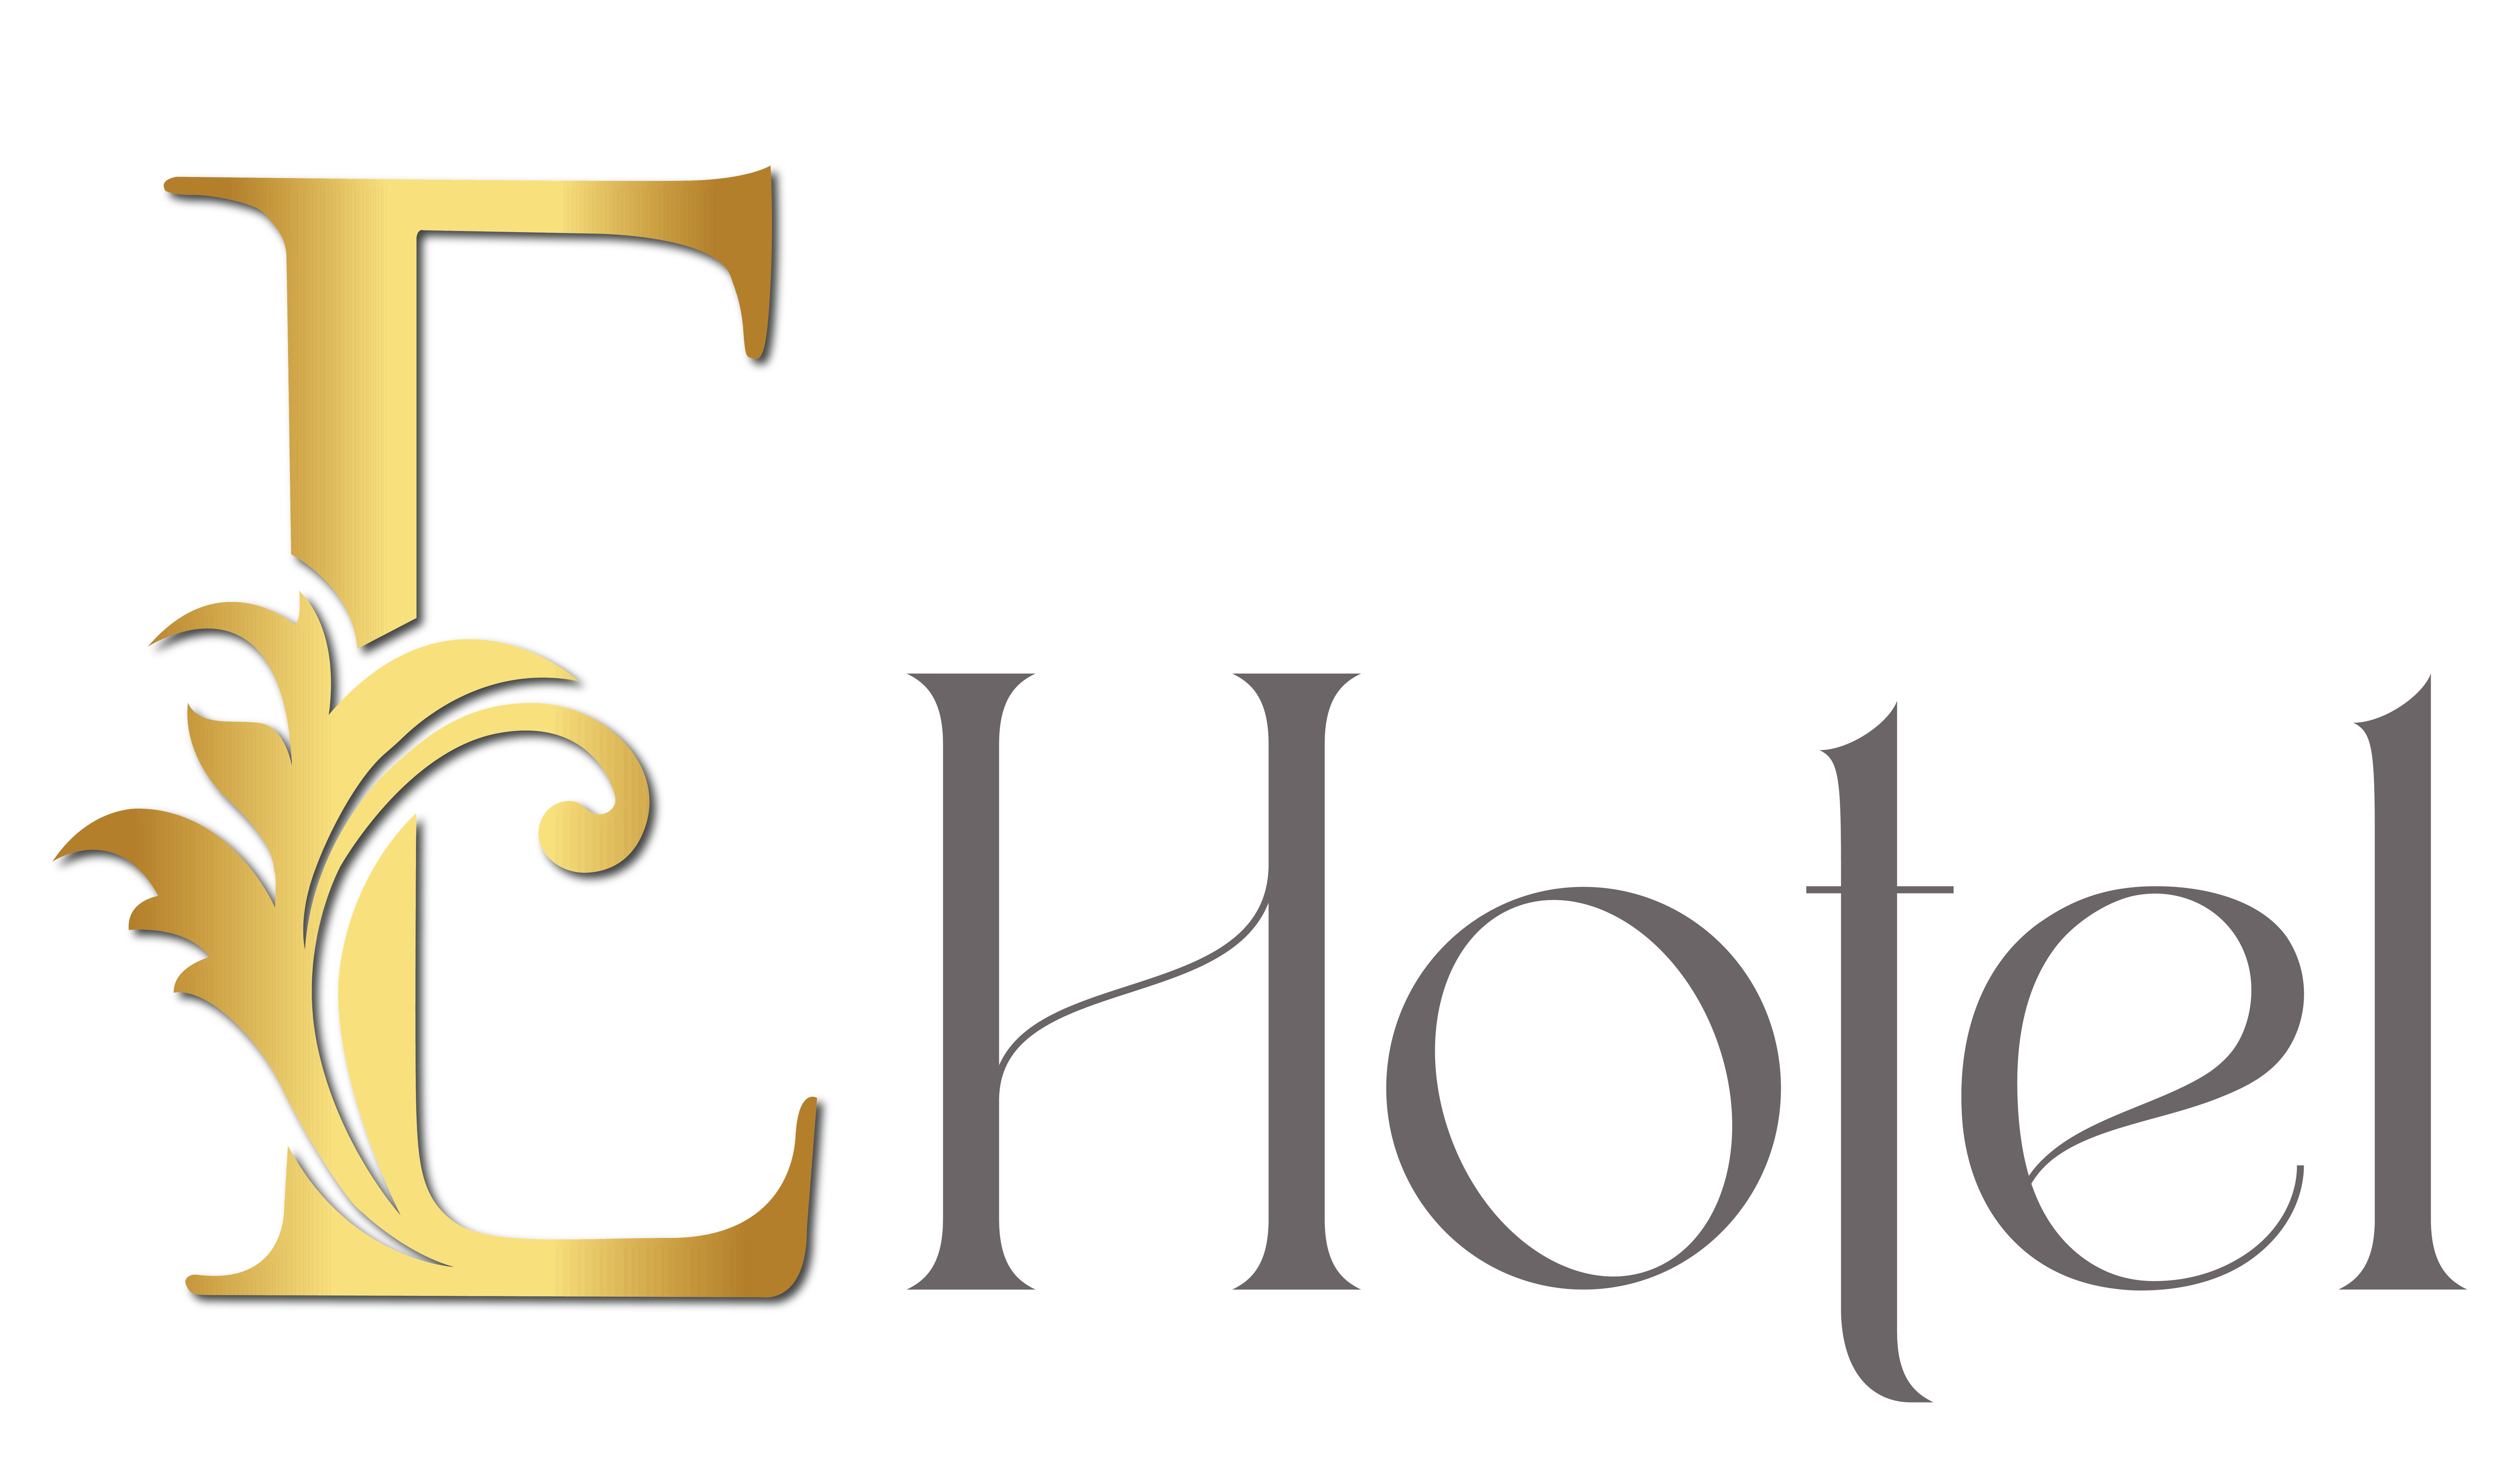 ehotel-logo